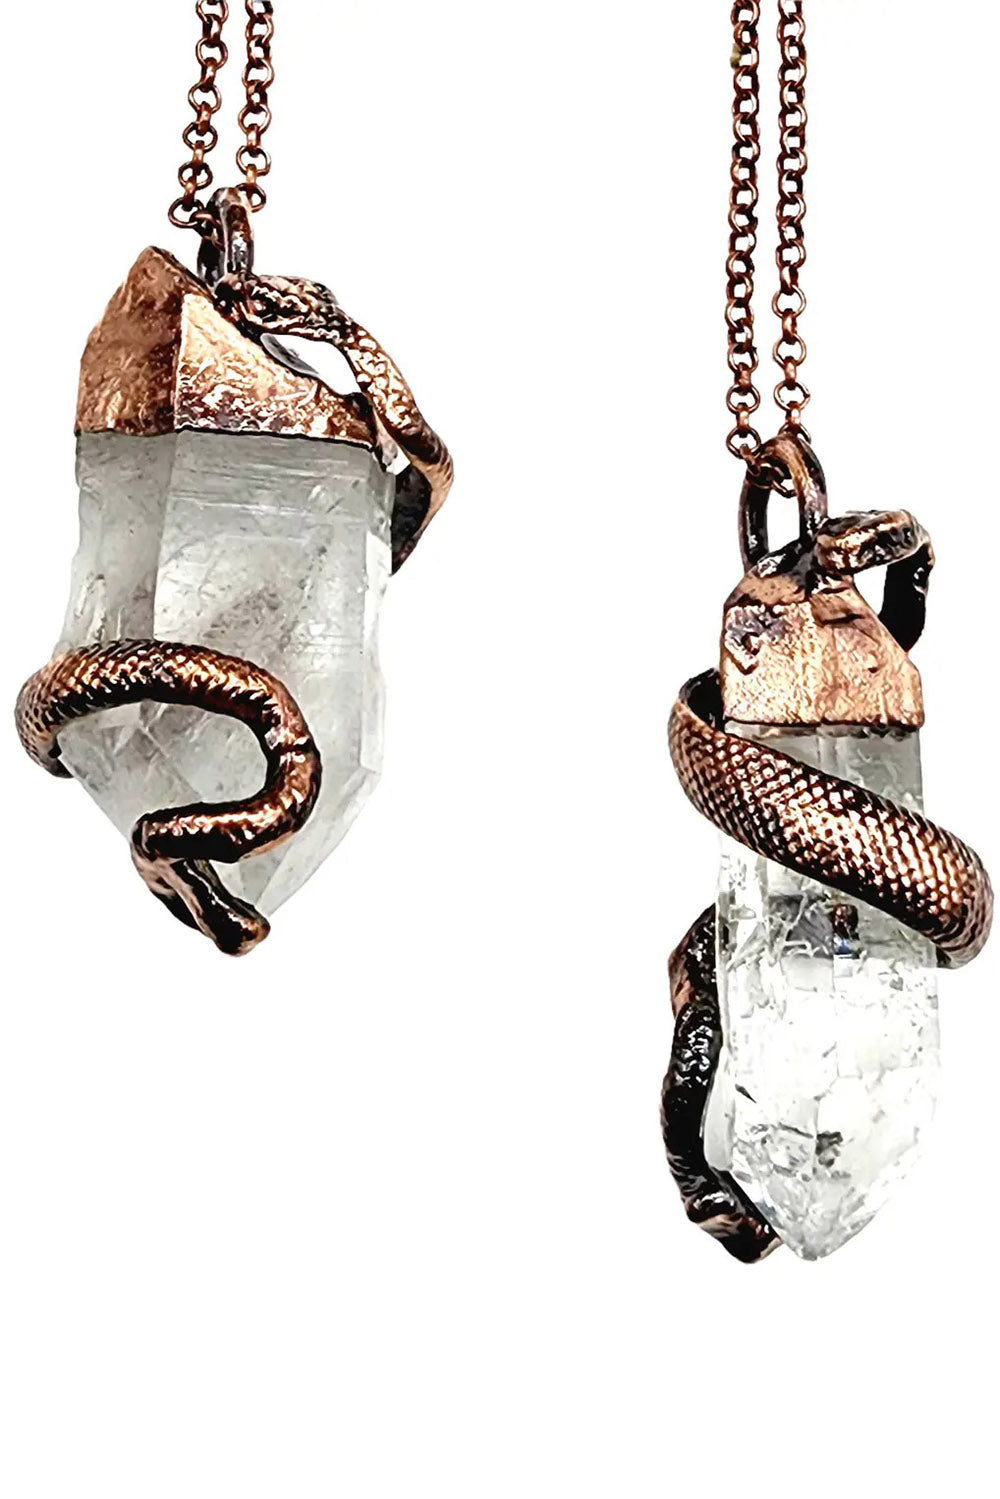 Clear Quartz Serpent Necklace